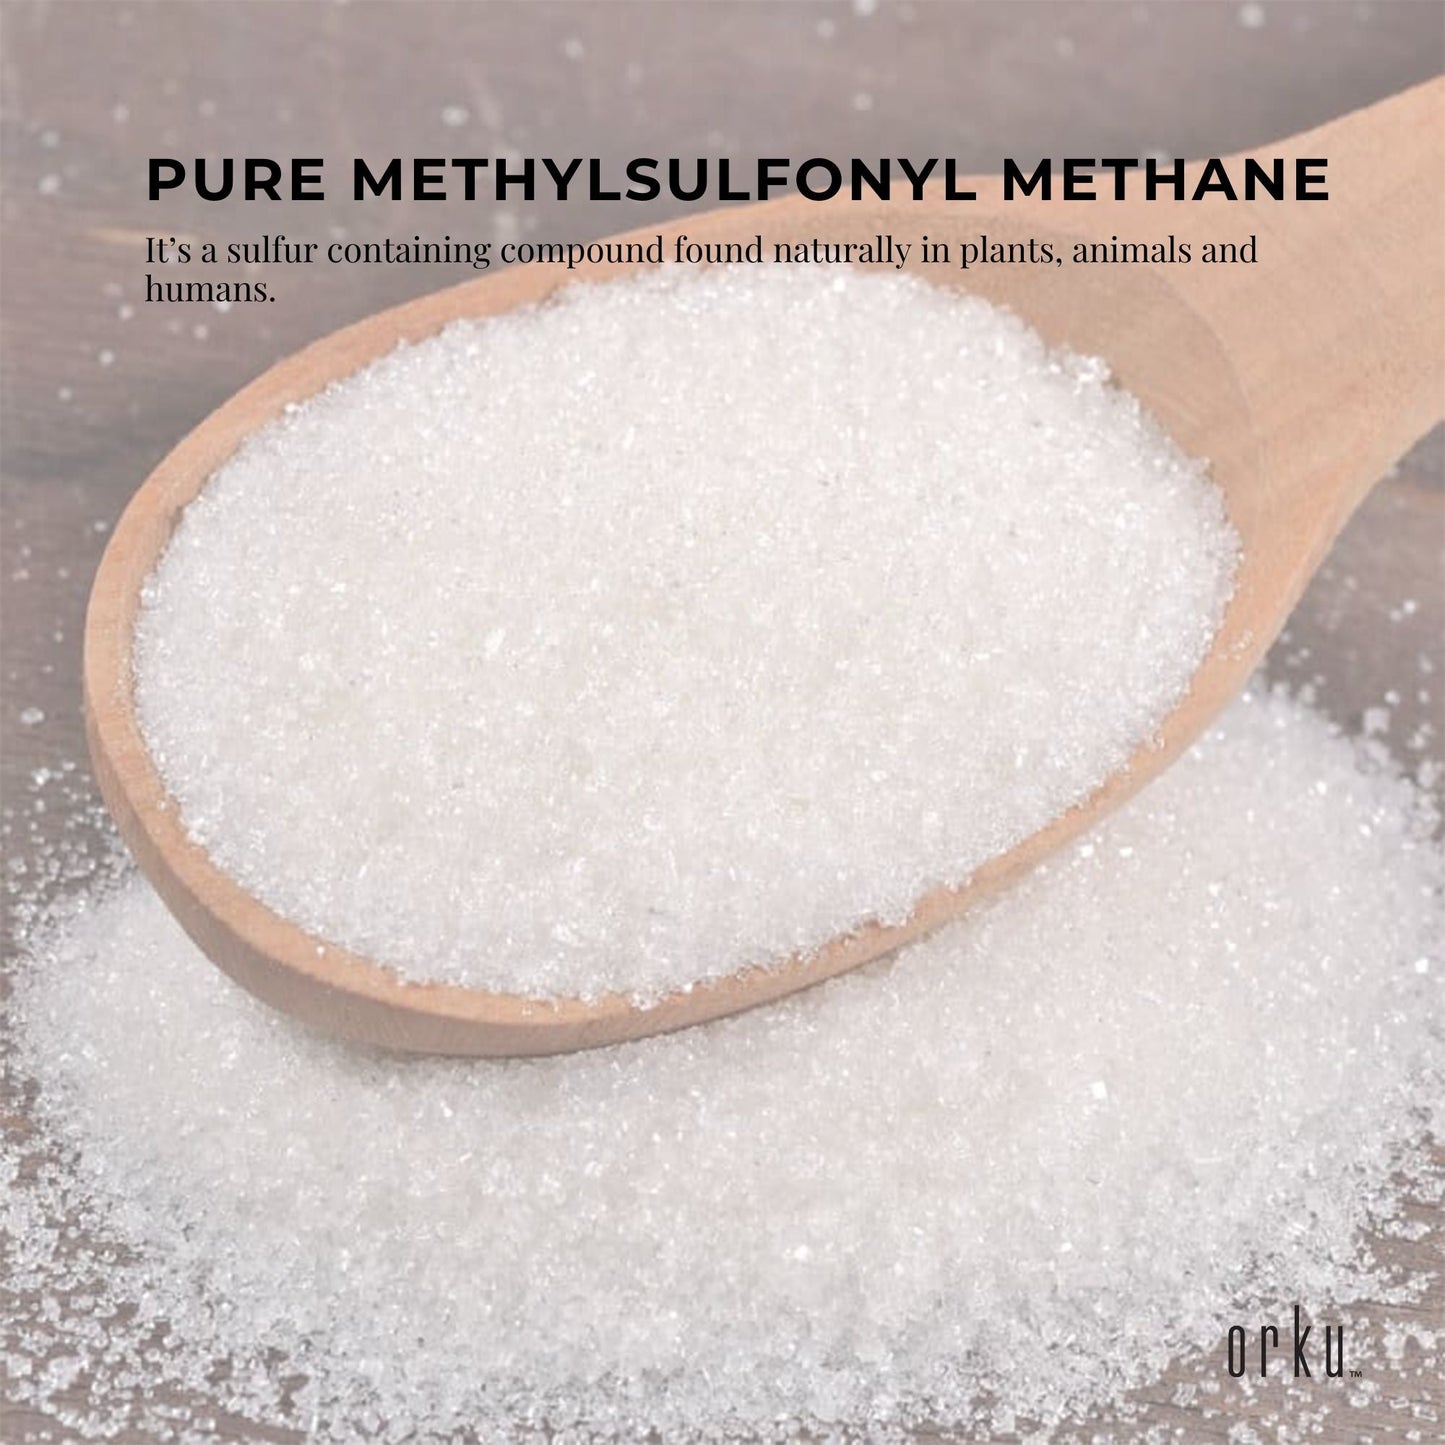 10Kg MSM Powder or Crystals Tub - 99% Pure Methylsulfonylmethane Dimethyl Sulfone